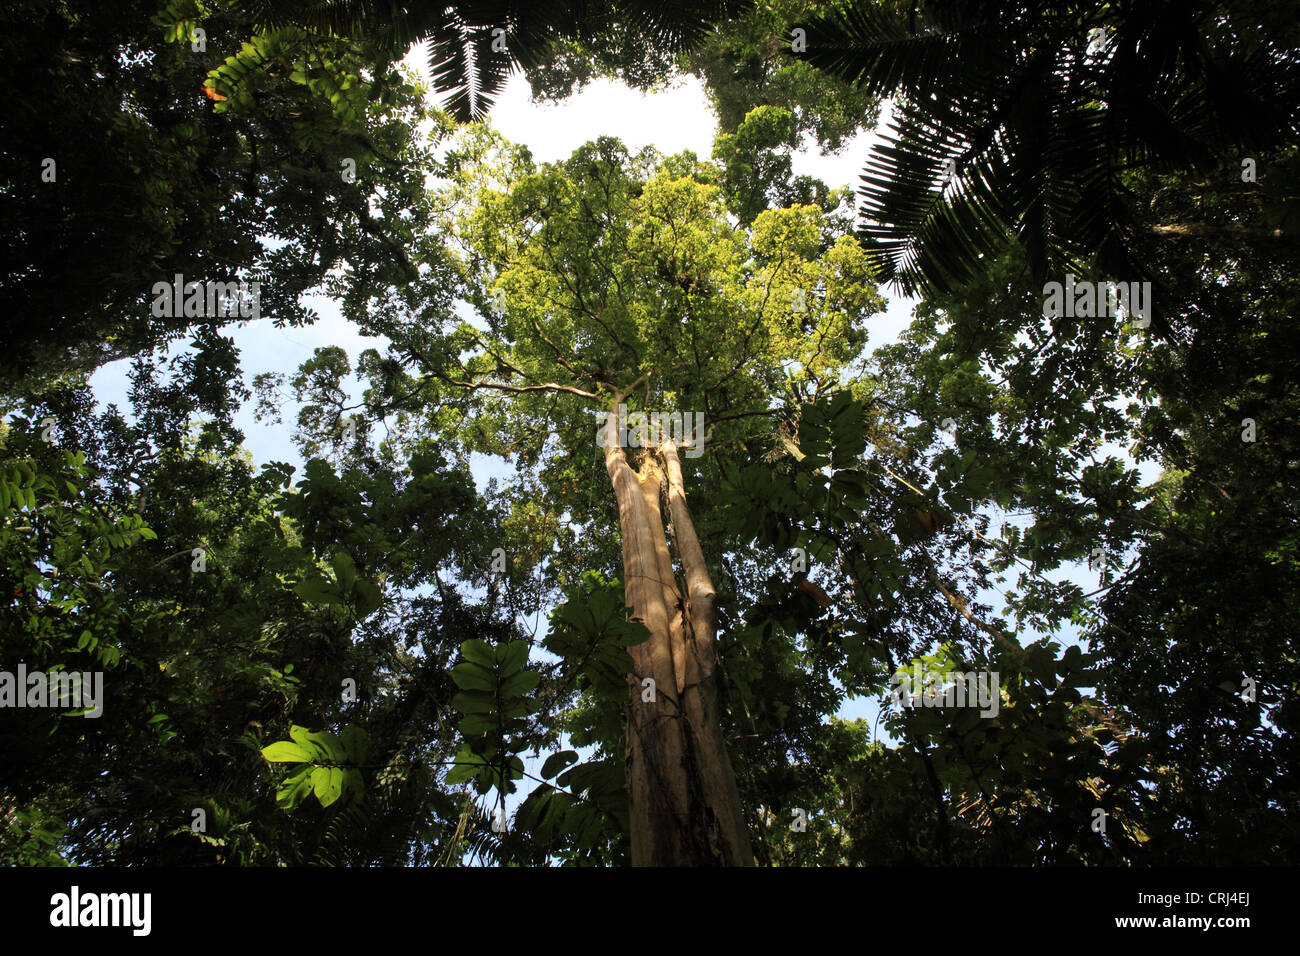 Ebano (Ceiba pentandra) nella foresta pluviale. La Selva la Stazione Biologica, Costa Rica. Agosto 2011. Foto Stock